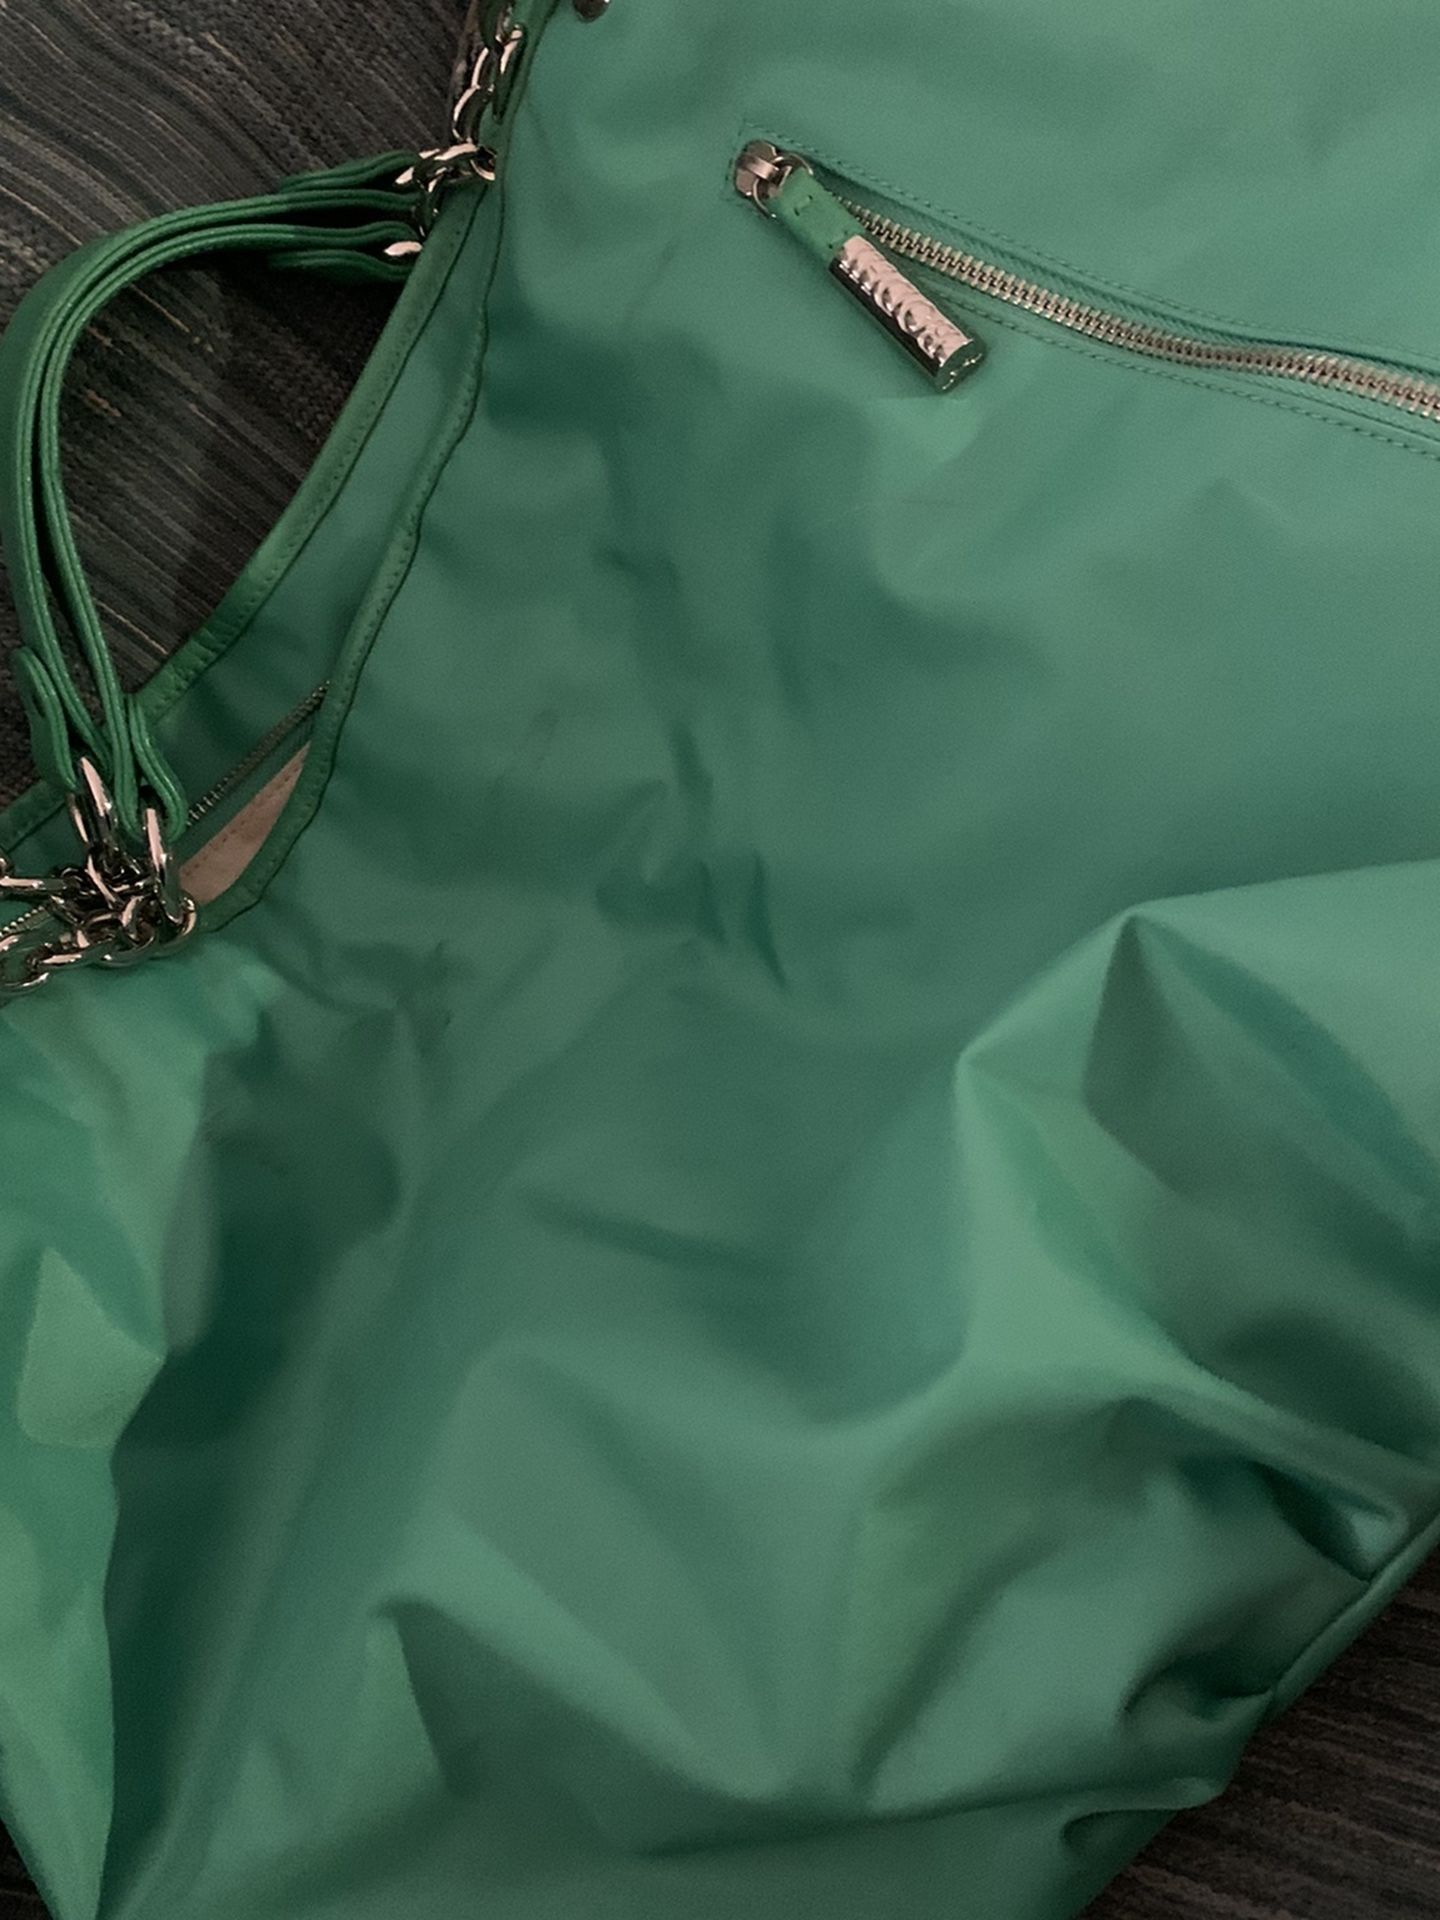 Bodhi Green Oversized Hobo Bag